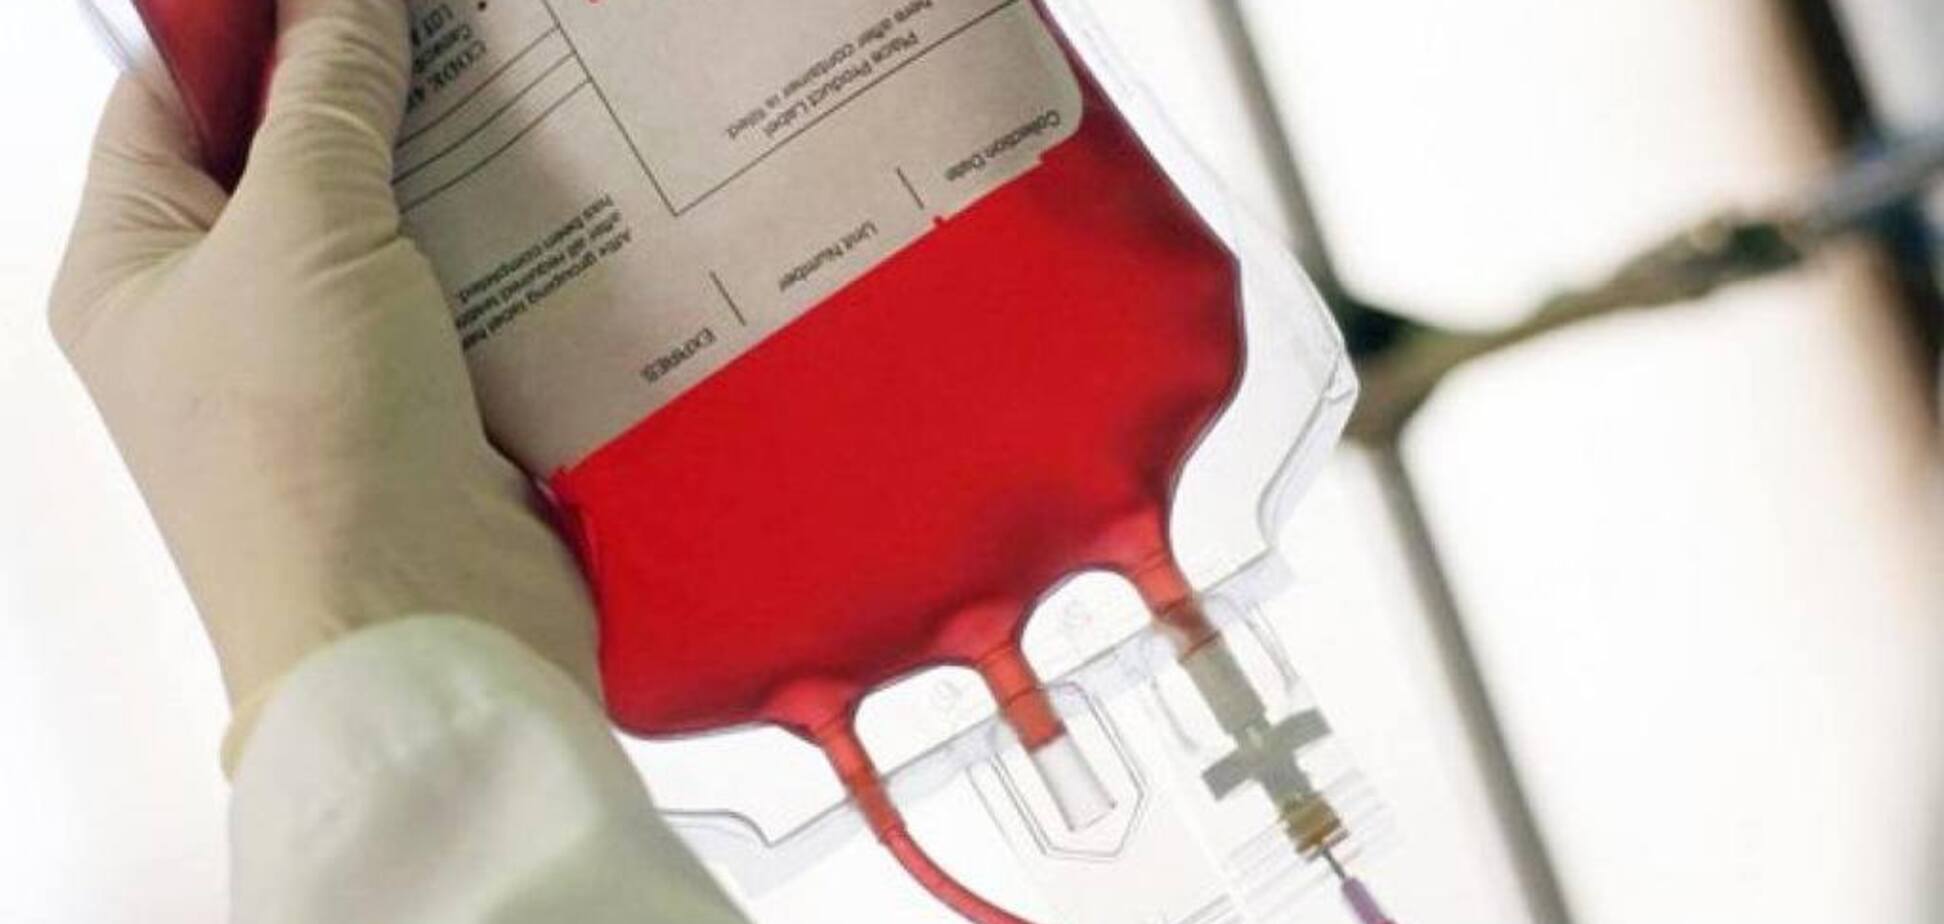 Експорт крові: в умовах нестачі донорів Україна продає препарати з крові за кордон 